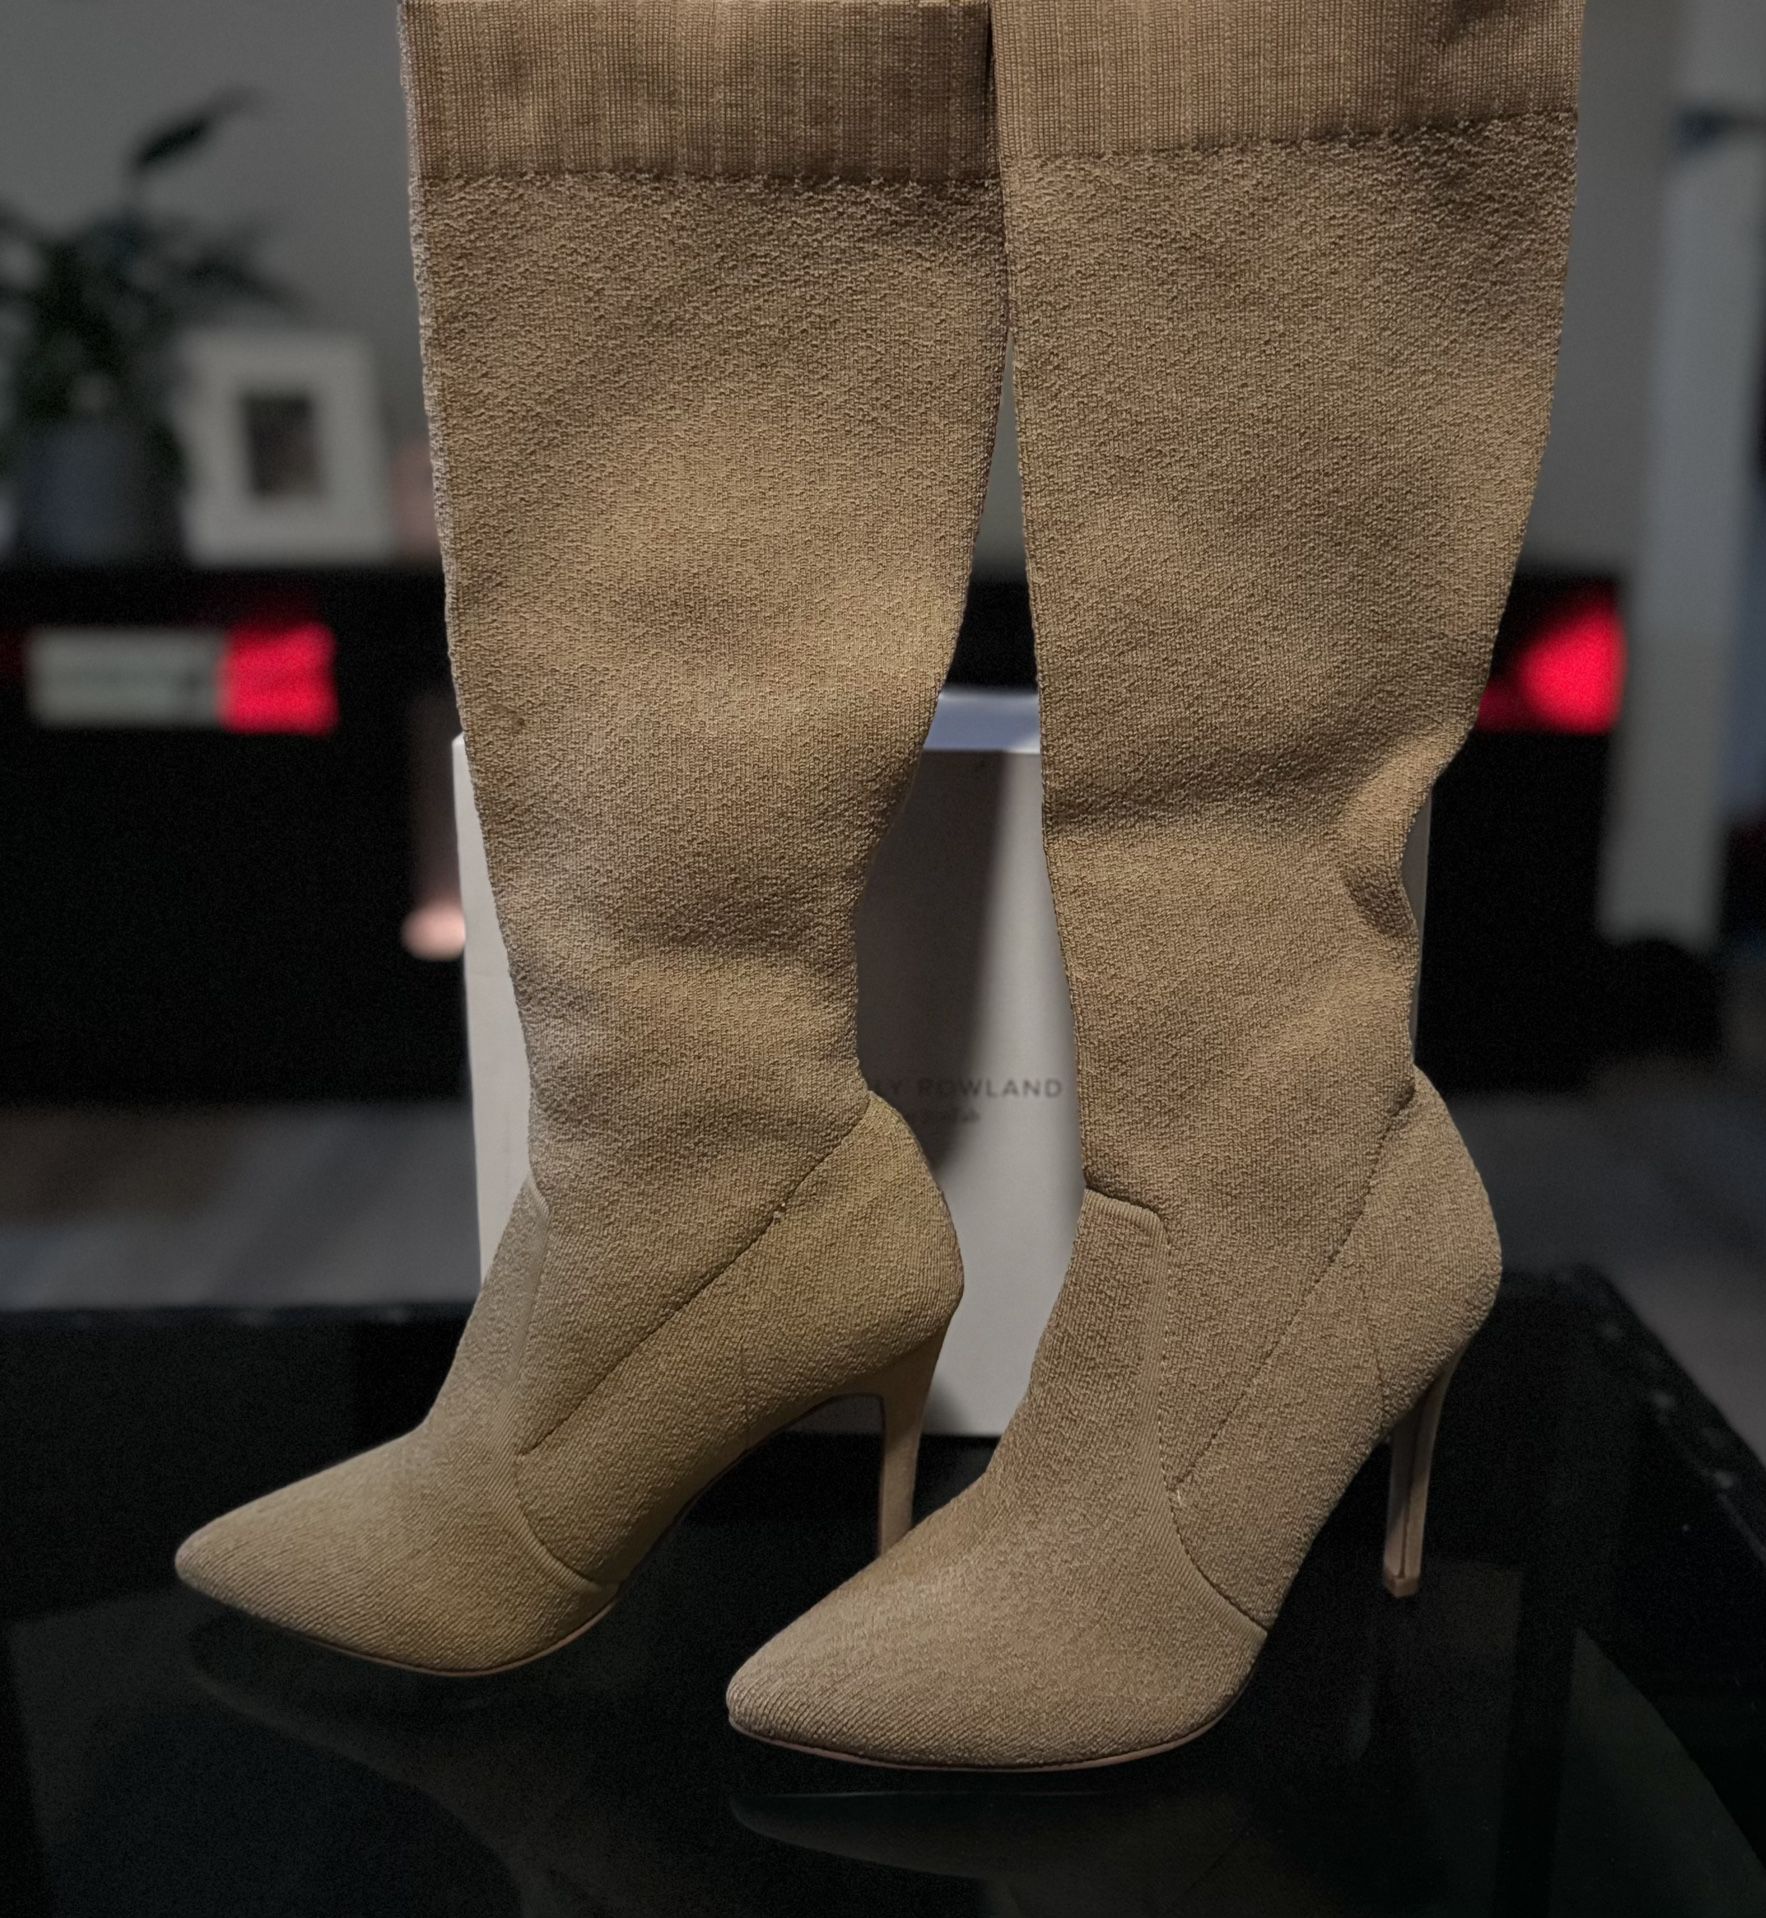 Kelly Rowland Heeled Boots